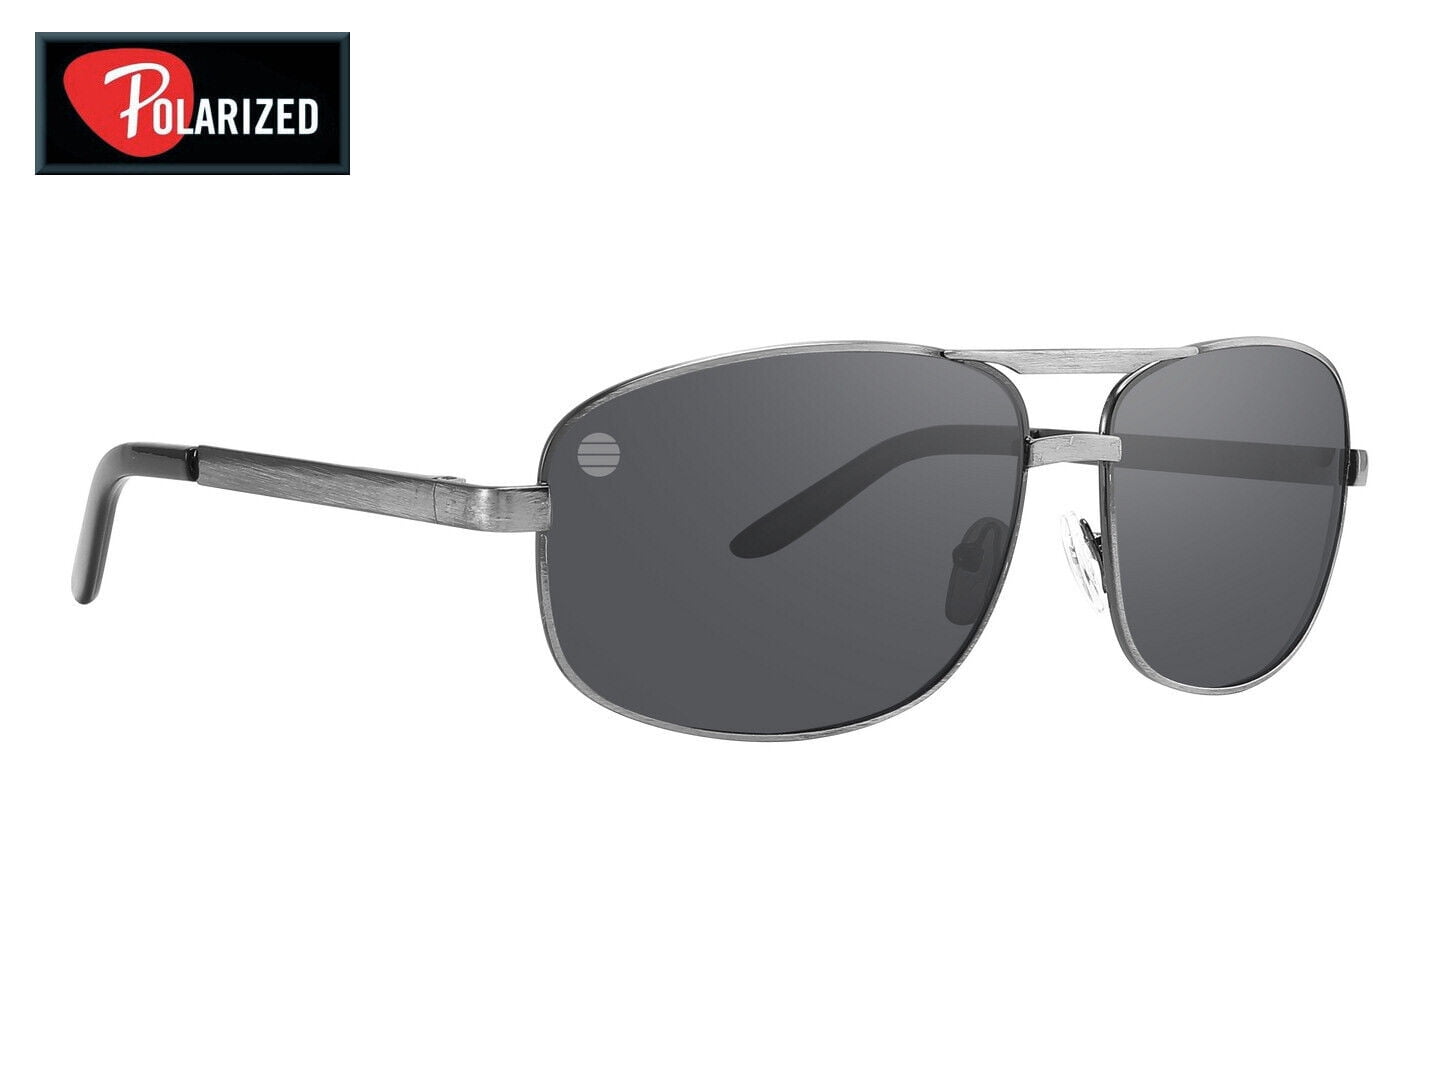 Timberland Black Men's Aviator Sunglasses M000213 - ItsHot